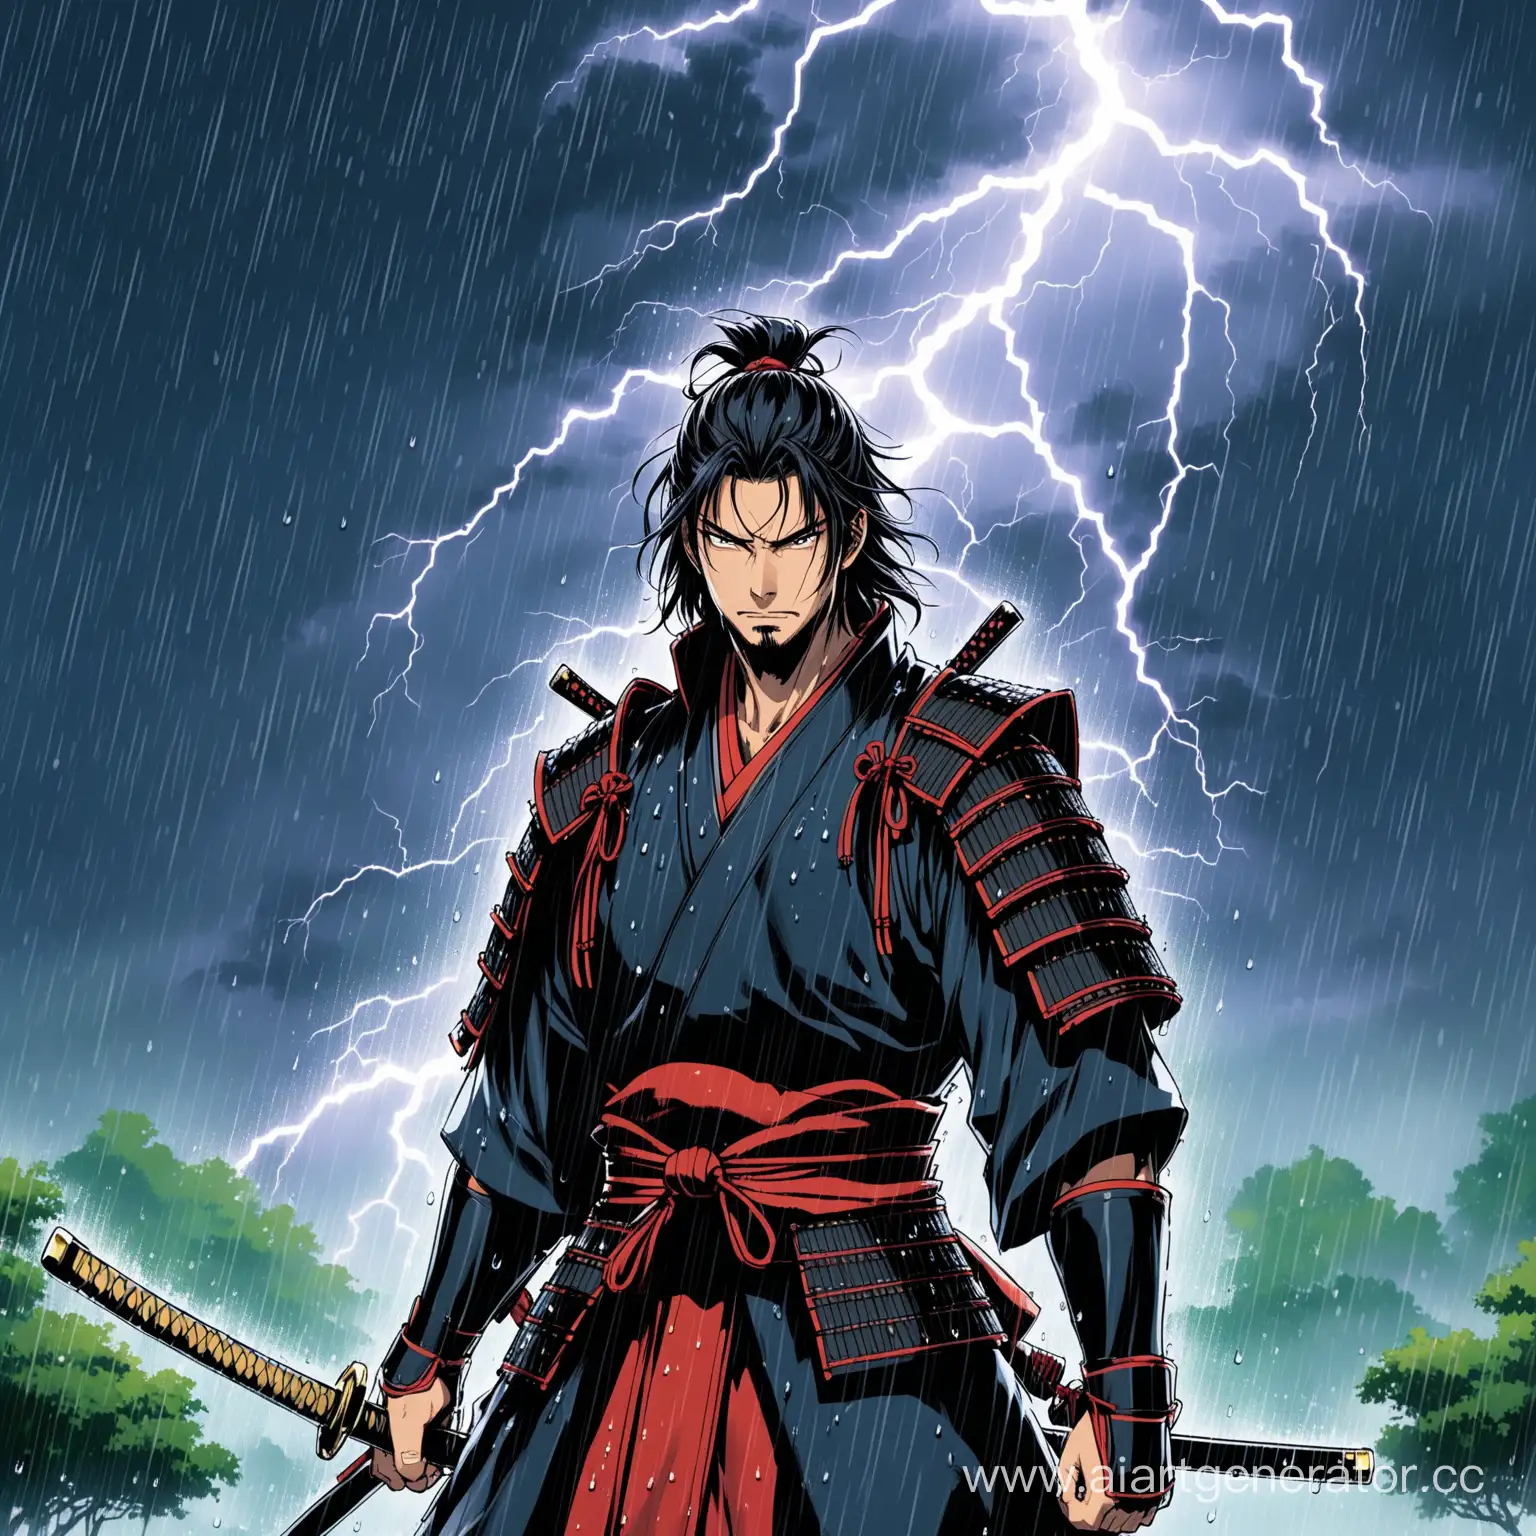 сделай самурая на фоне дождя и чтоб из глаз у него была молниянфт